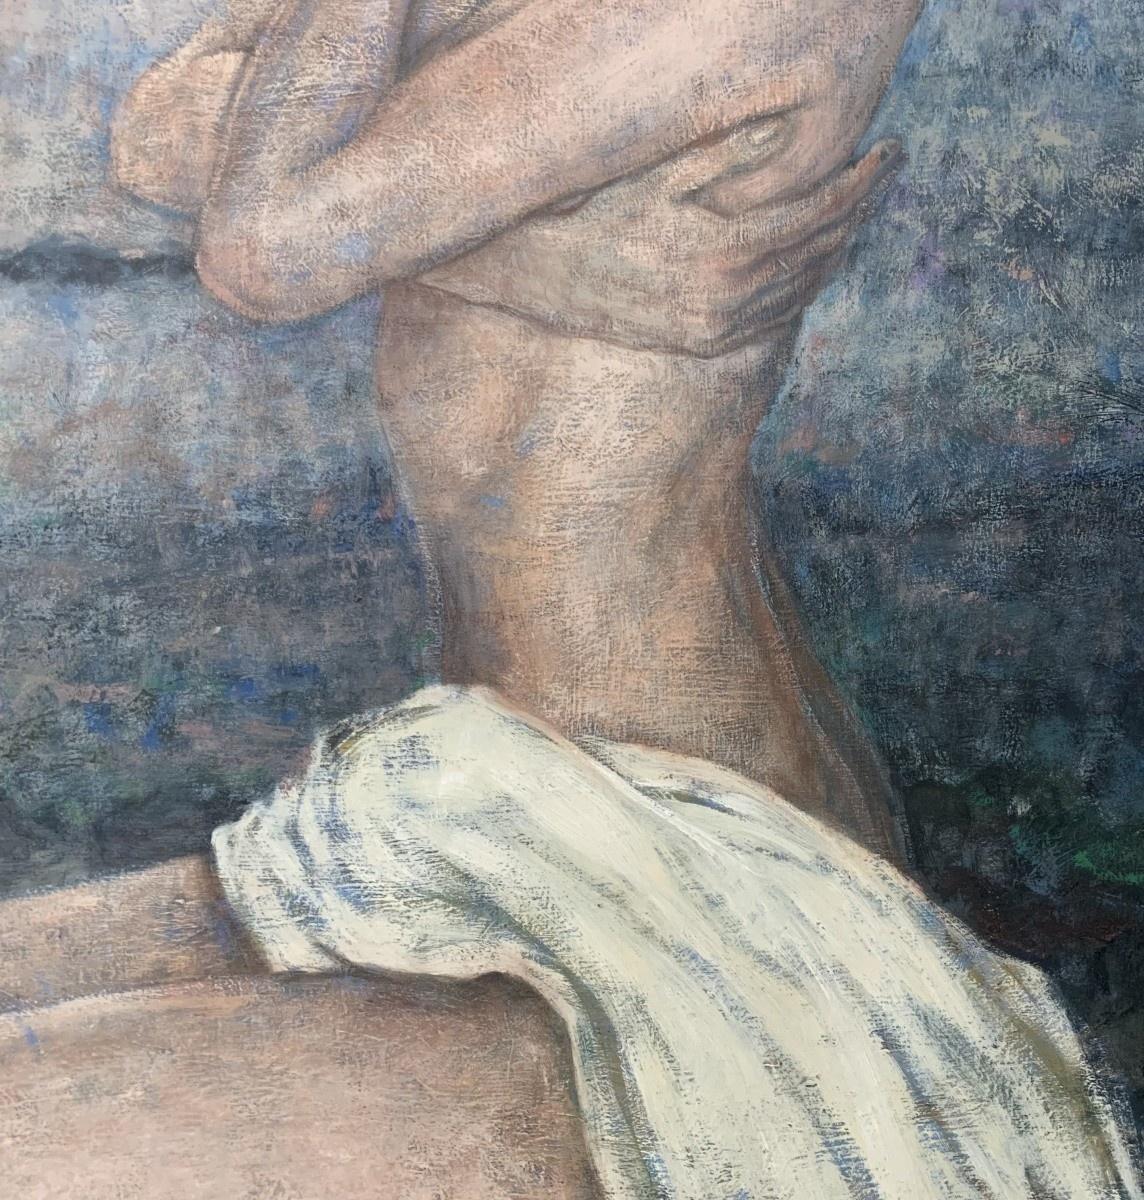 Zeitgenössisches figuratives Ölgemälde auf Leinwand der polnischen Künstlerin Katarzyna Szydlowska. Malerei Bilder weiblich in nude. Sie sitzt am Strand, im Hintergrund sind Meer und Klippen zu sehen, und neben ihr liegen Muscheln. Ein Tuch bedeckt